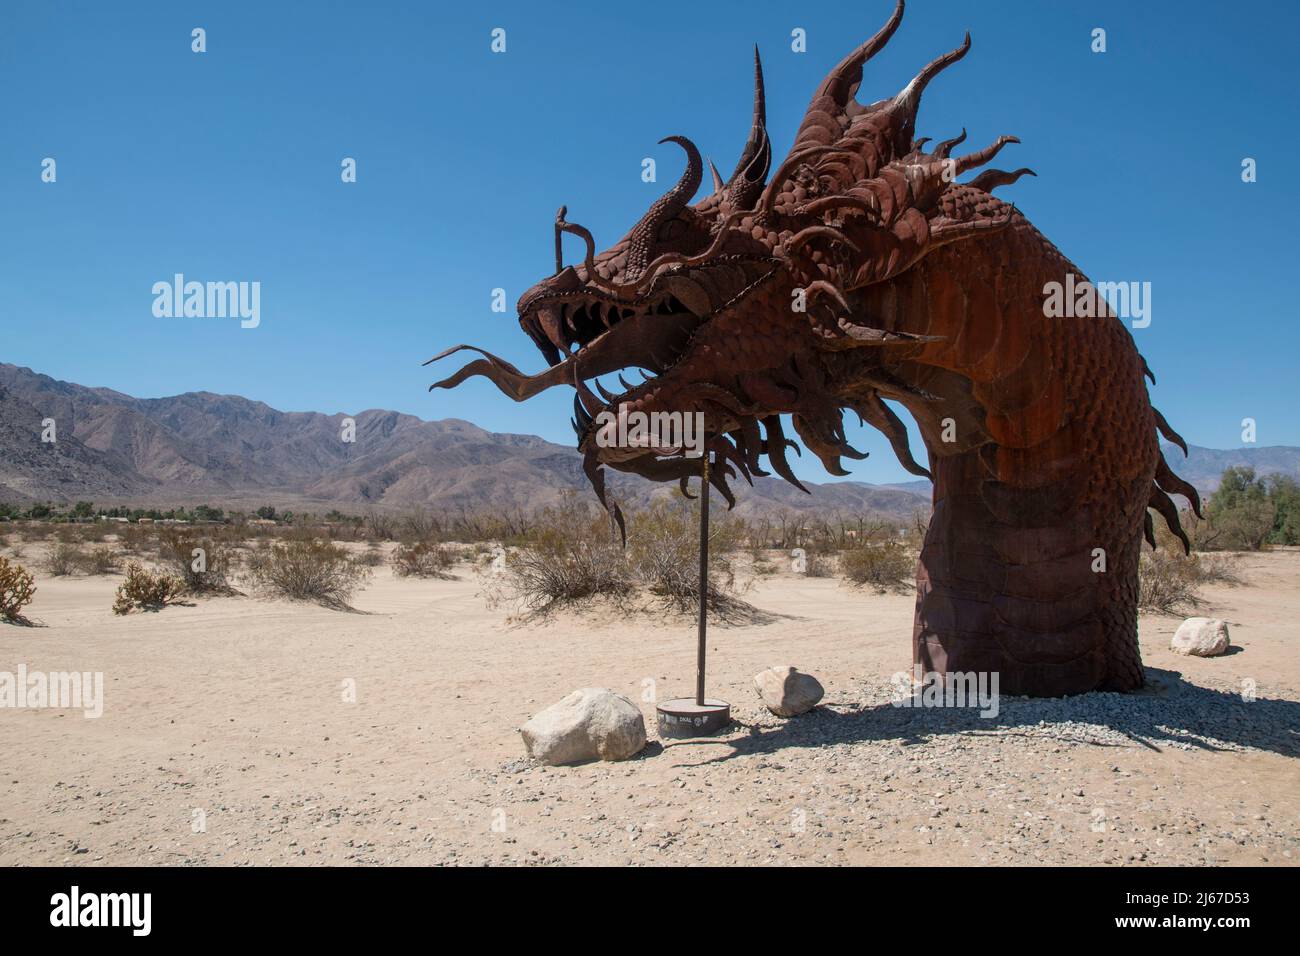 Il y a des statues métalliques d'animaux tels que des chevaux, des sangliers, des aigles, des chameaux et des dragons près de Borrego Springs, en Californie du Sud. Banque D'Images